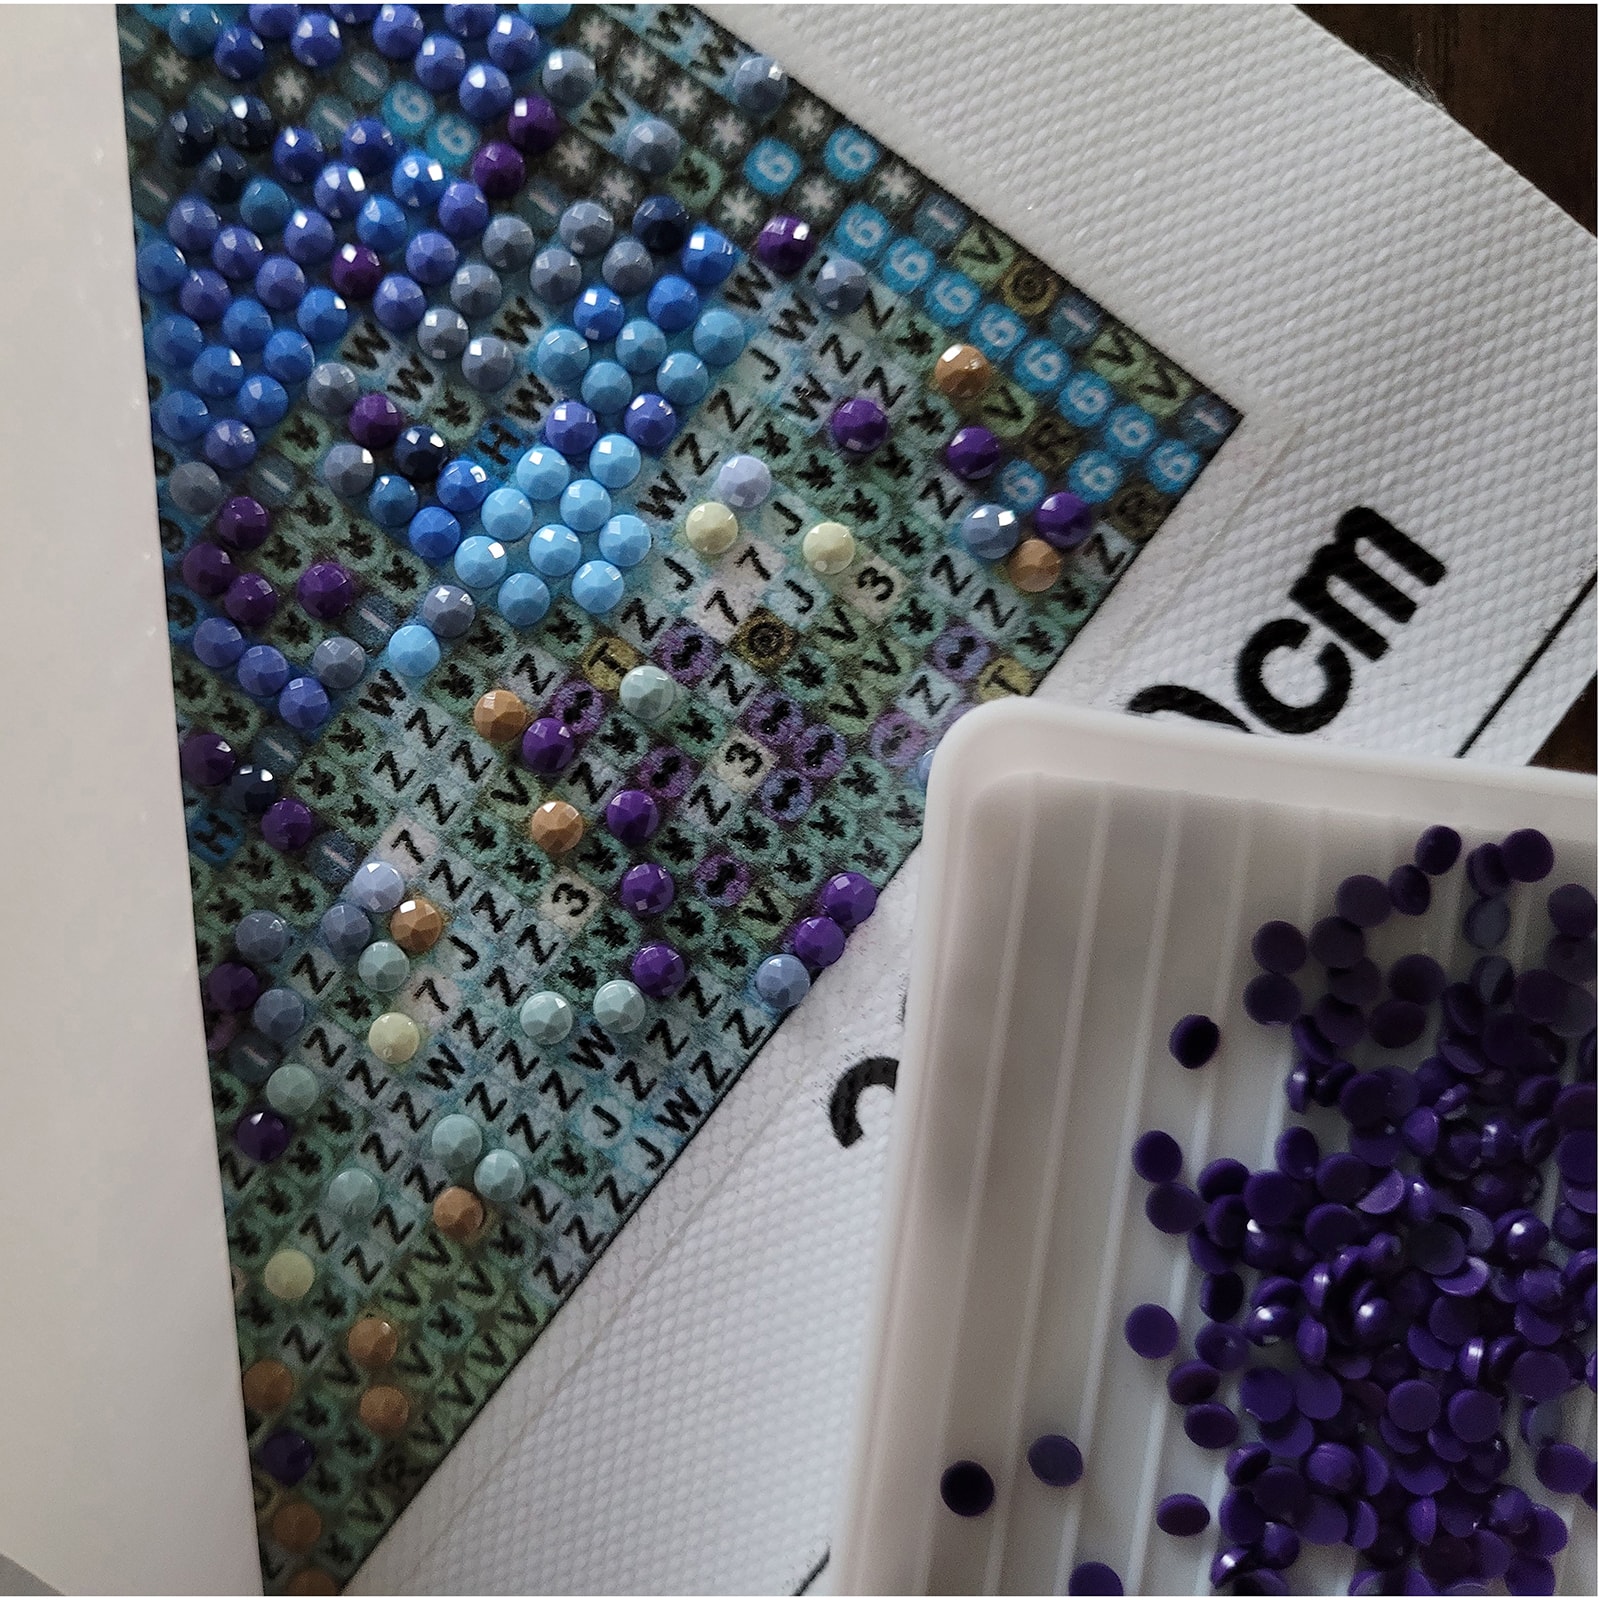 Sparkly Selections Beginner Starry Night Diamond Painting Kit, Square Diamonds